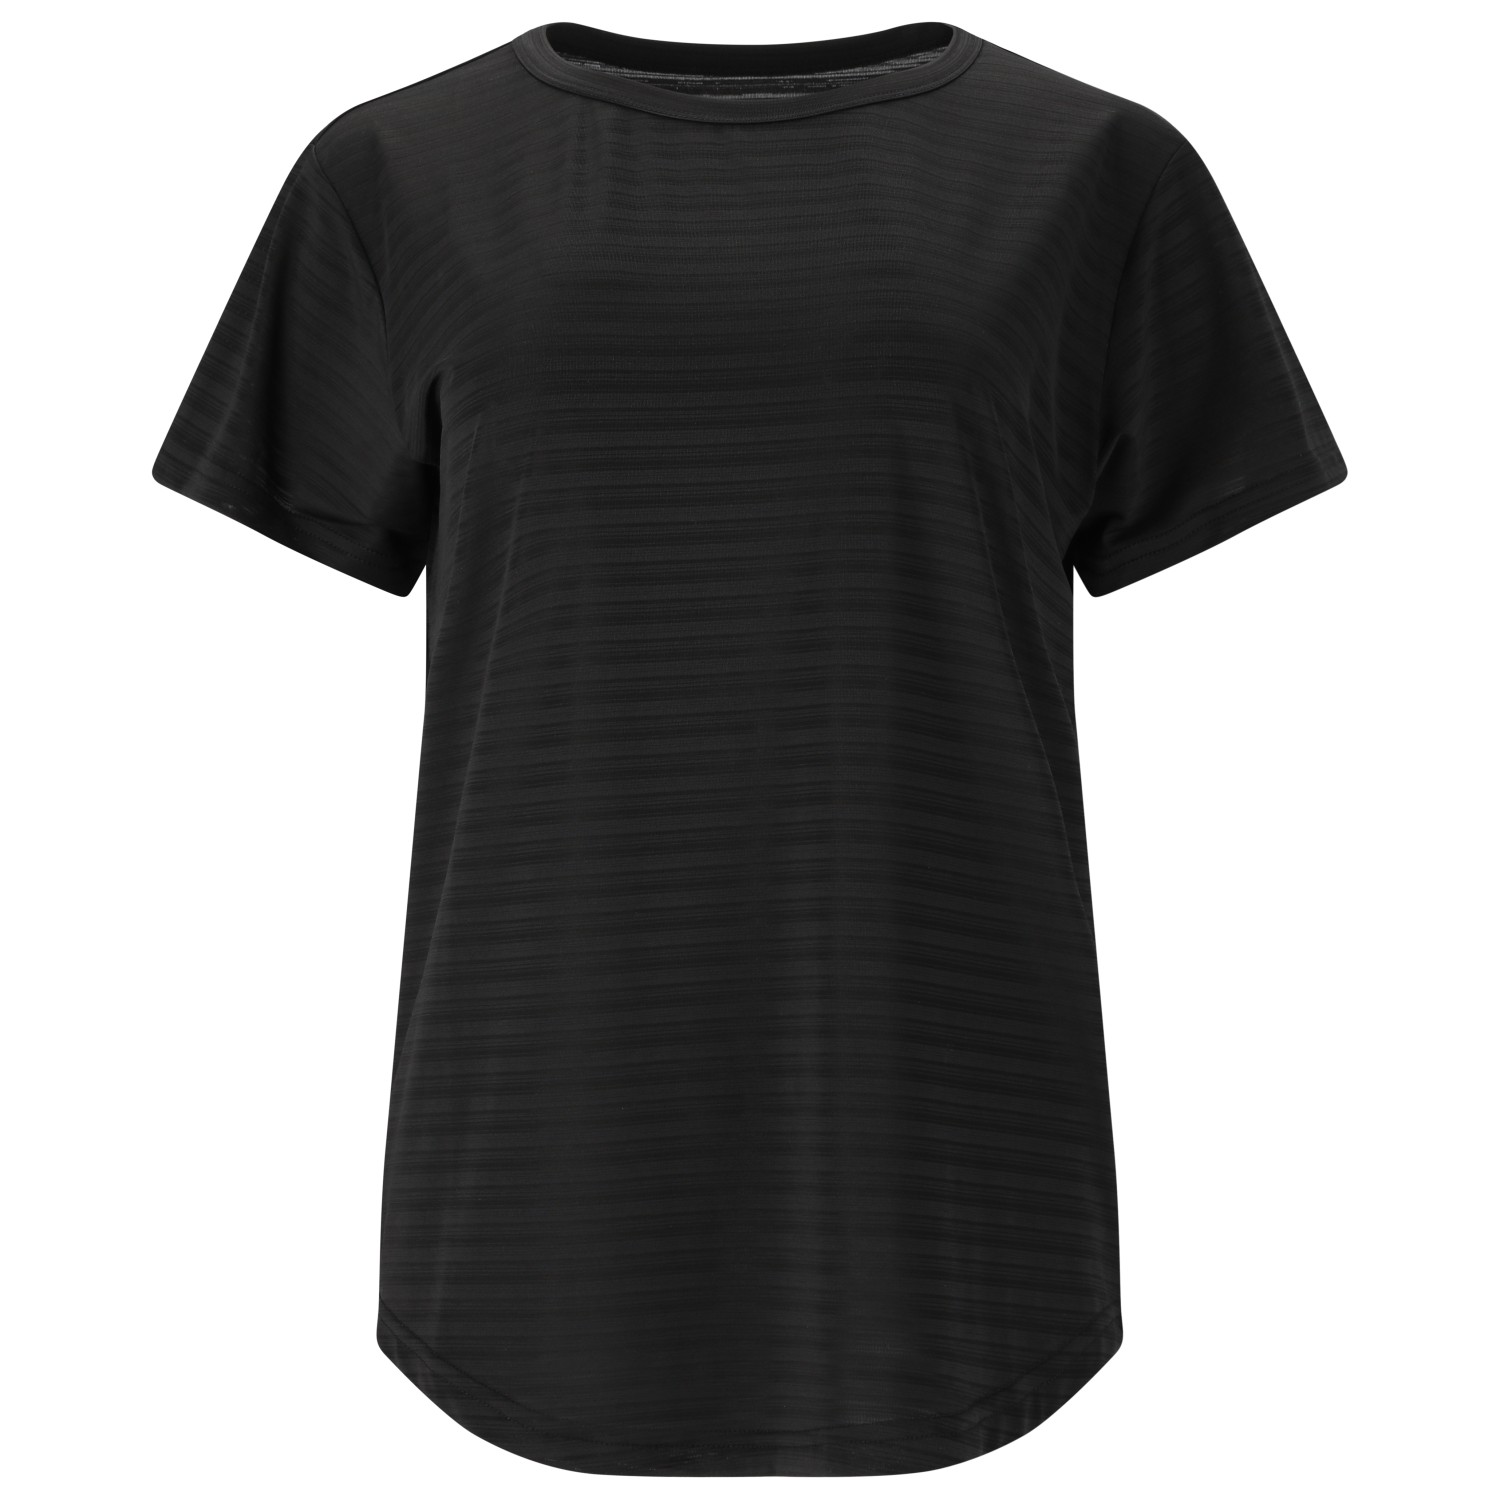 Функциональная рубашка Whistler Women's Skylon Striped S/S Tee, черный